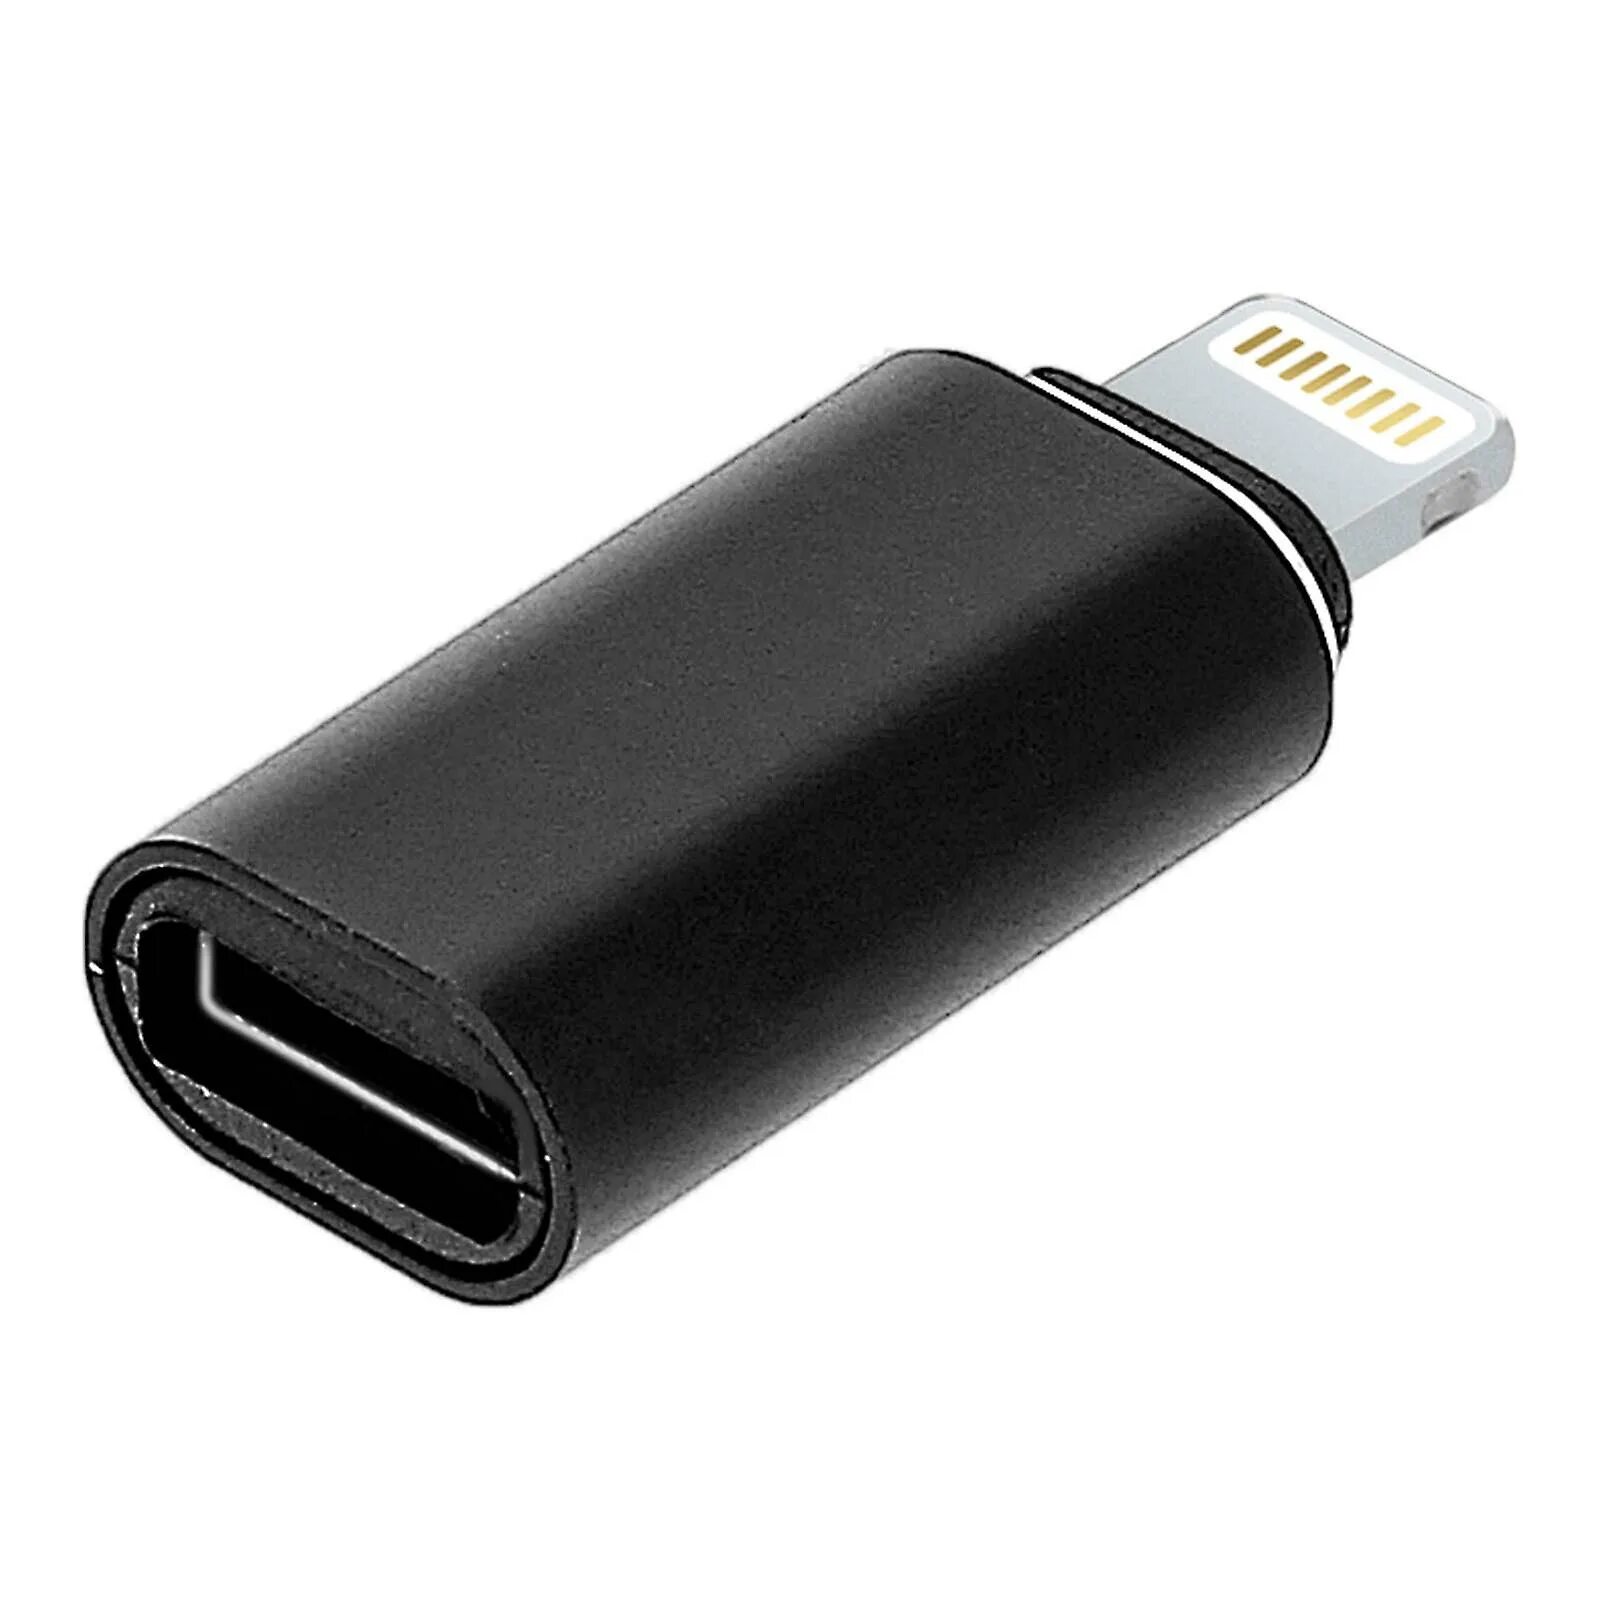 Переходник Lightning USB Type-c. Iphone USB C Adapter. Perexodnik iphone to Type-c. Переходник Type c на Lightning.